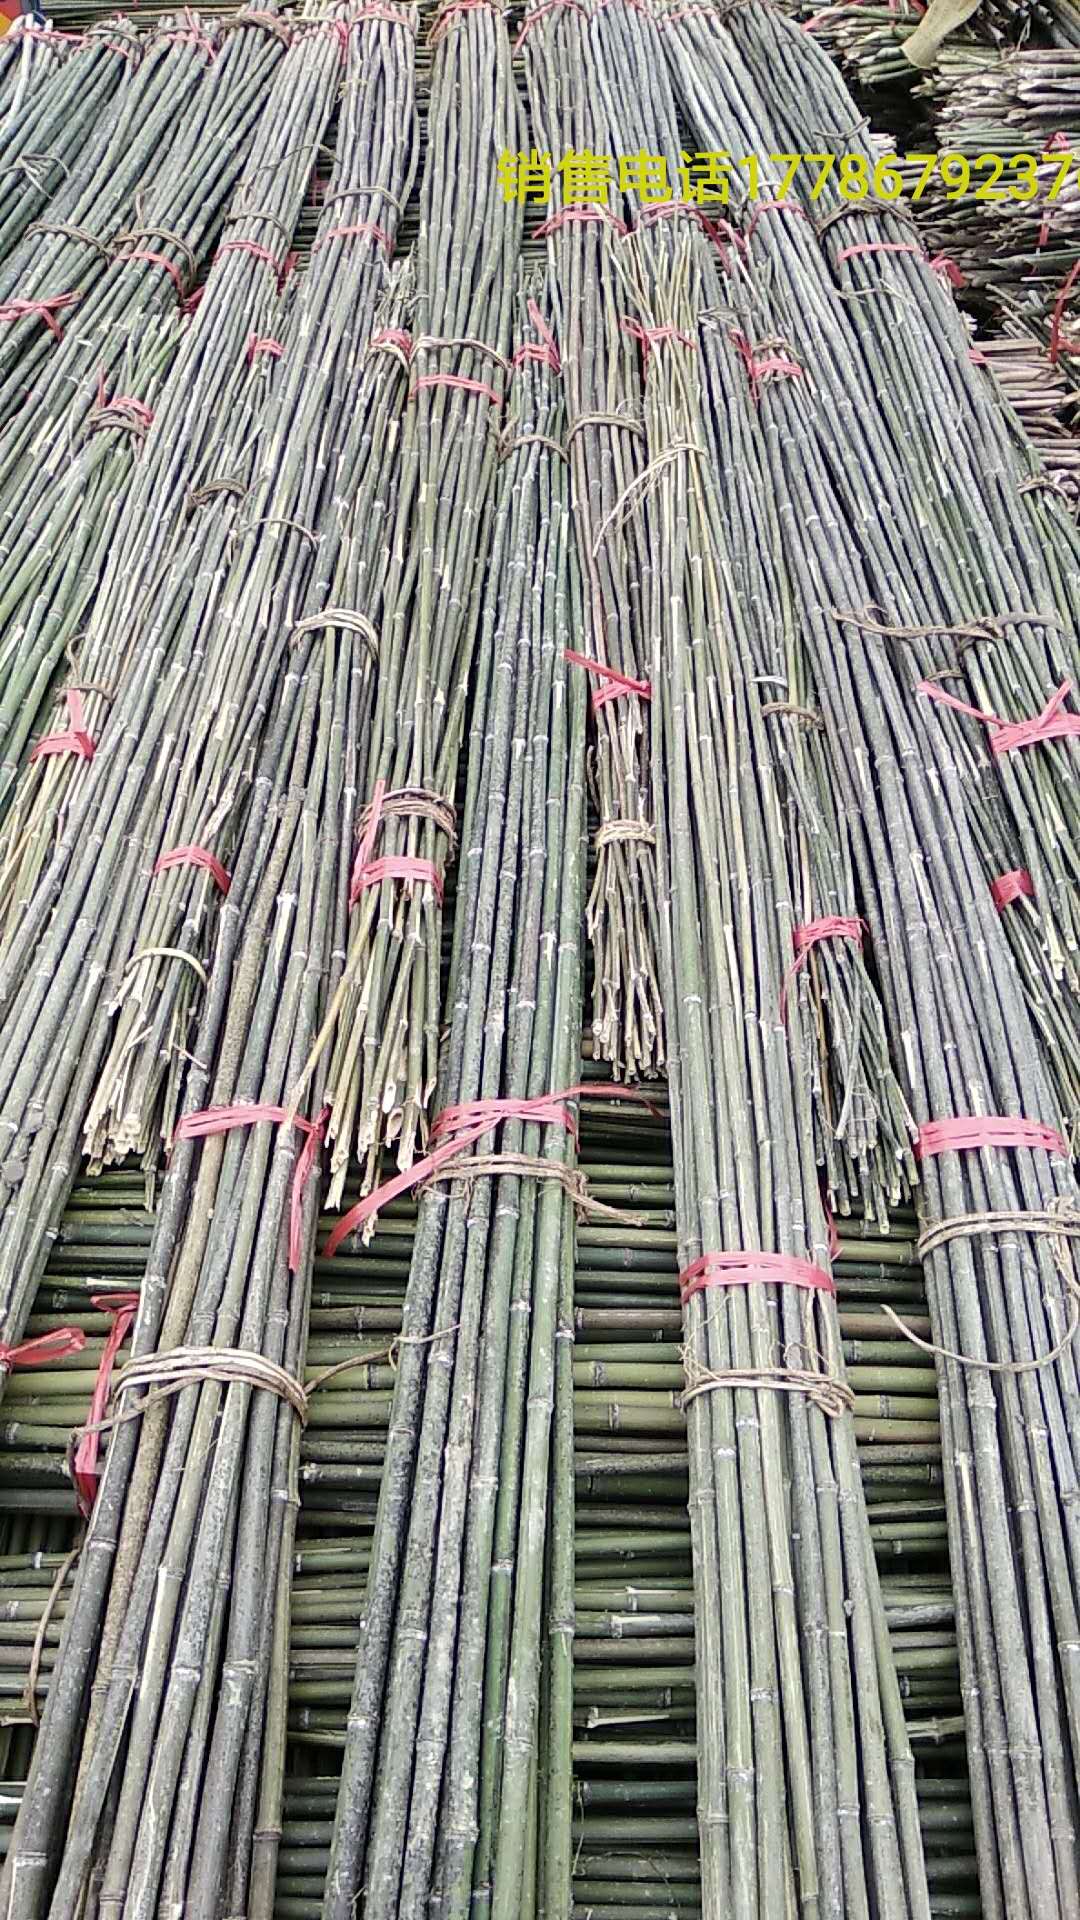 树木支撑竹杆 竹木、藤苇、干草 竹片 鄂西北各种尺寸竹杆 温室大棚竹杆5